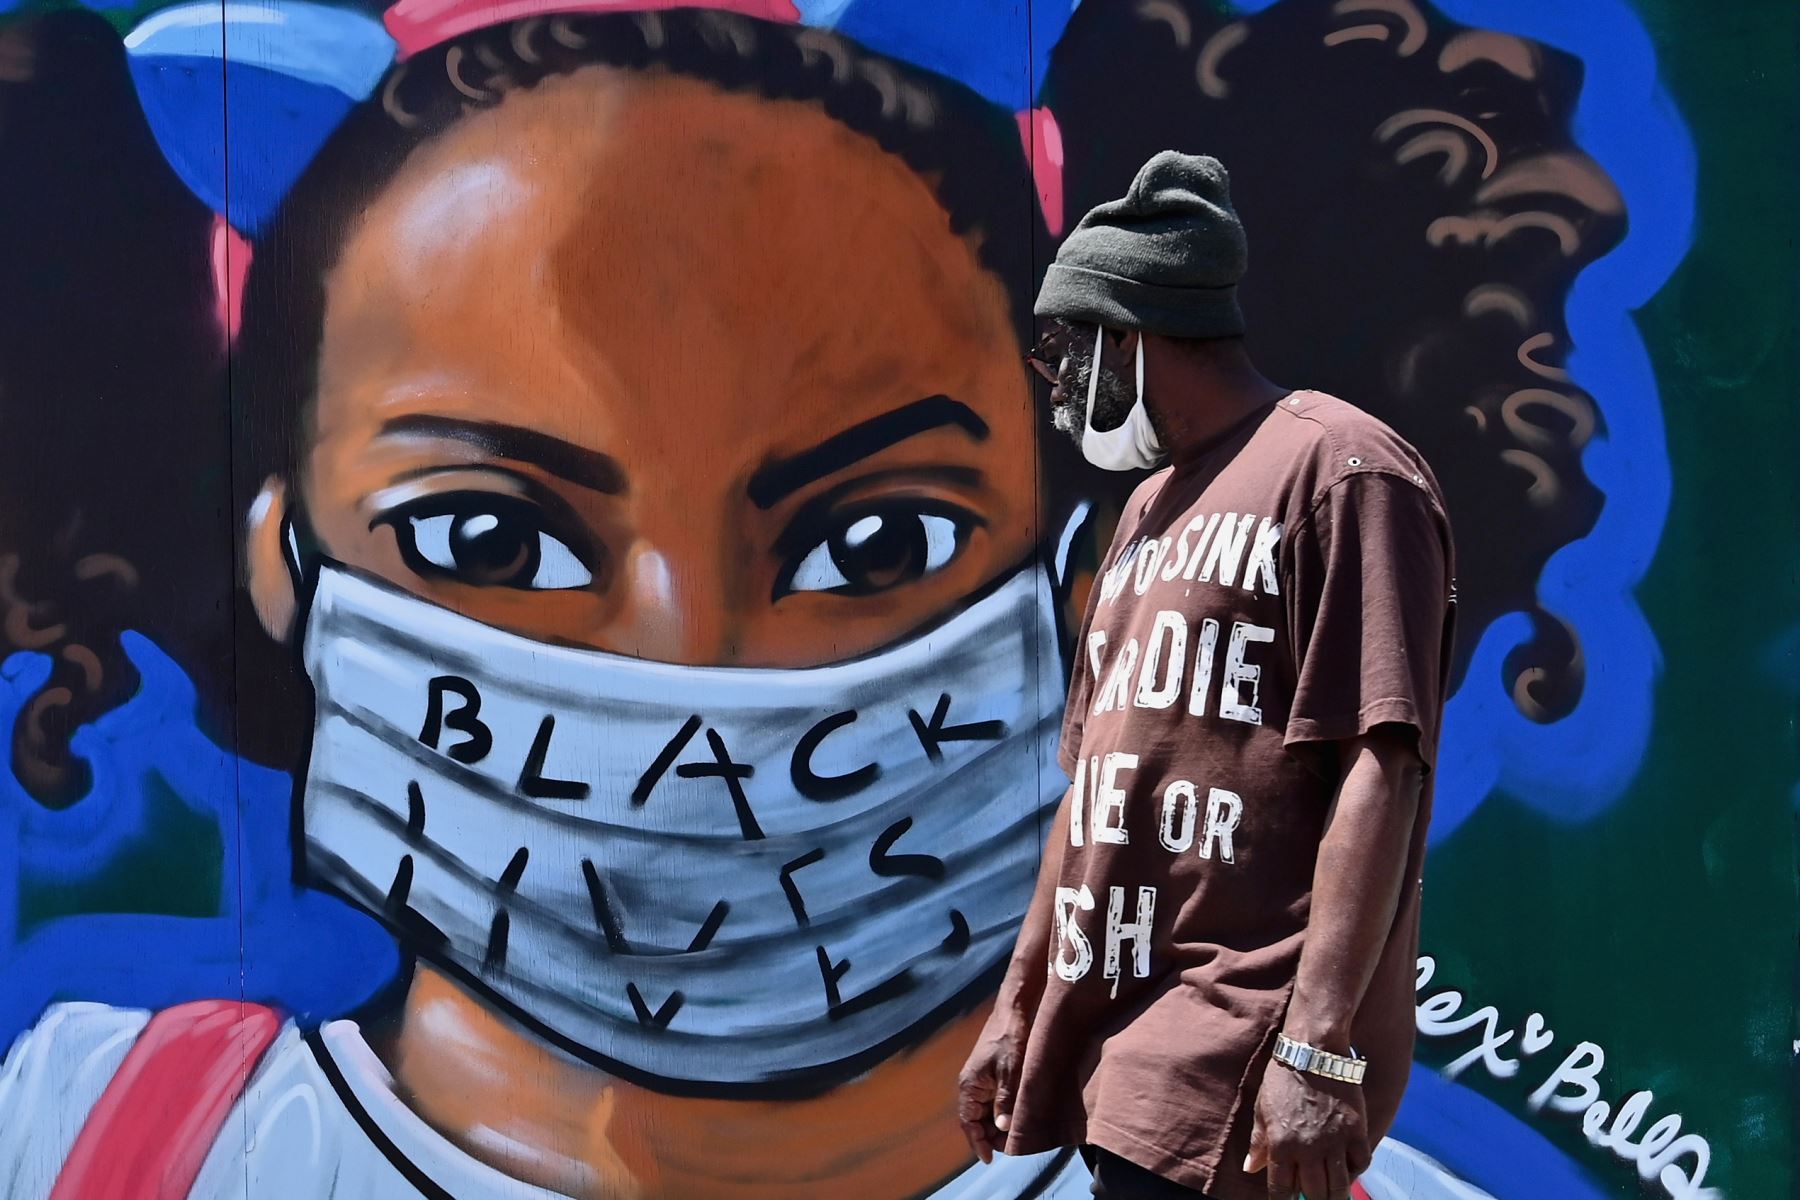 Una persona pasa frente a un mural callejero del artista Lexi Bella en el distrito de Brooklyn de la ciudad de Nueva York. Foto: AFP